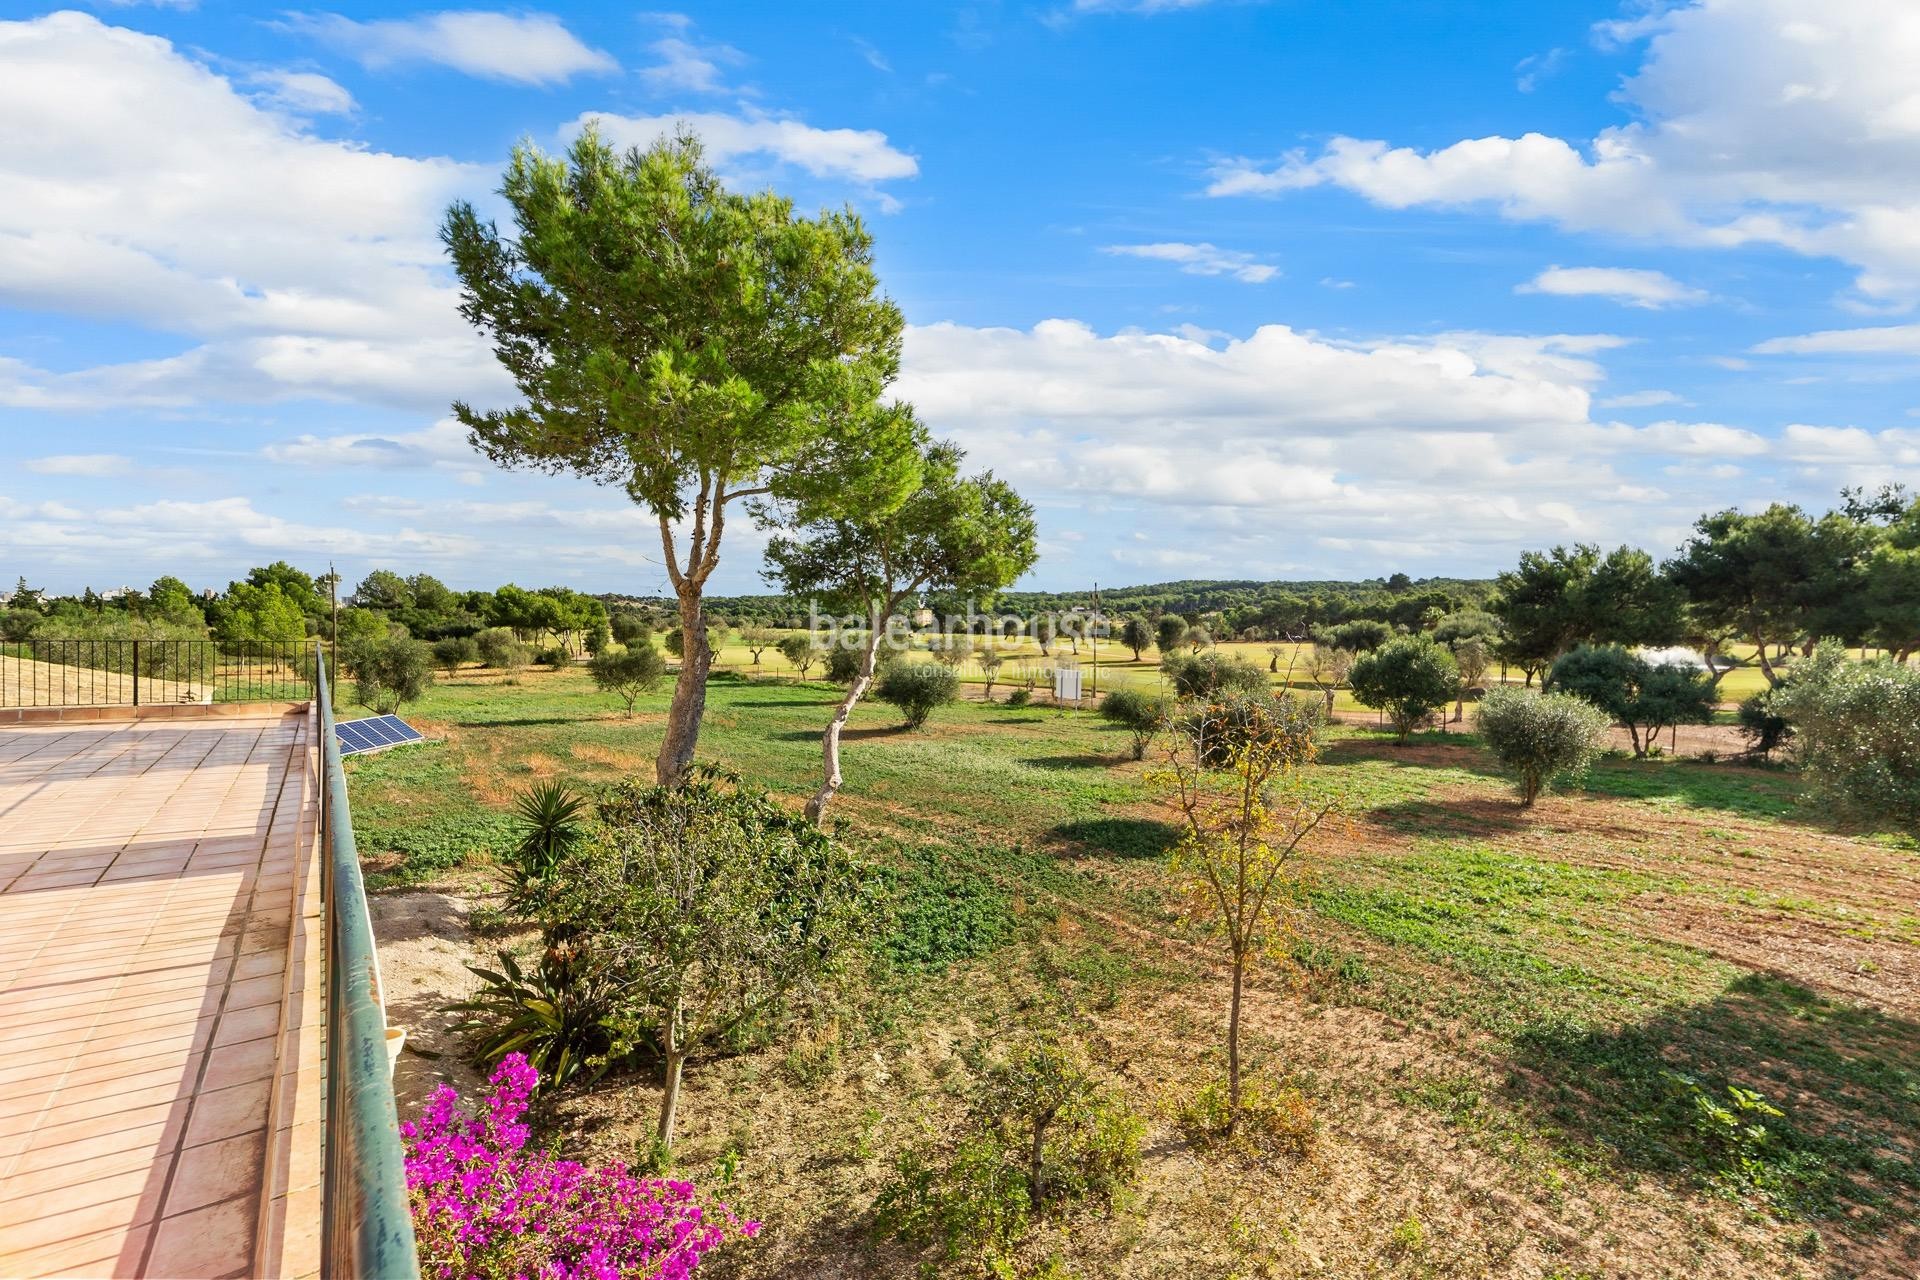 Extensa finca junto al golf cerca de Port Adriano con preciosas vistas al entorno.